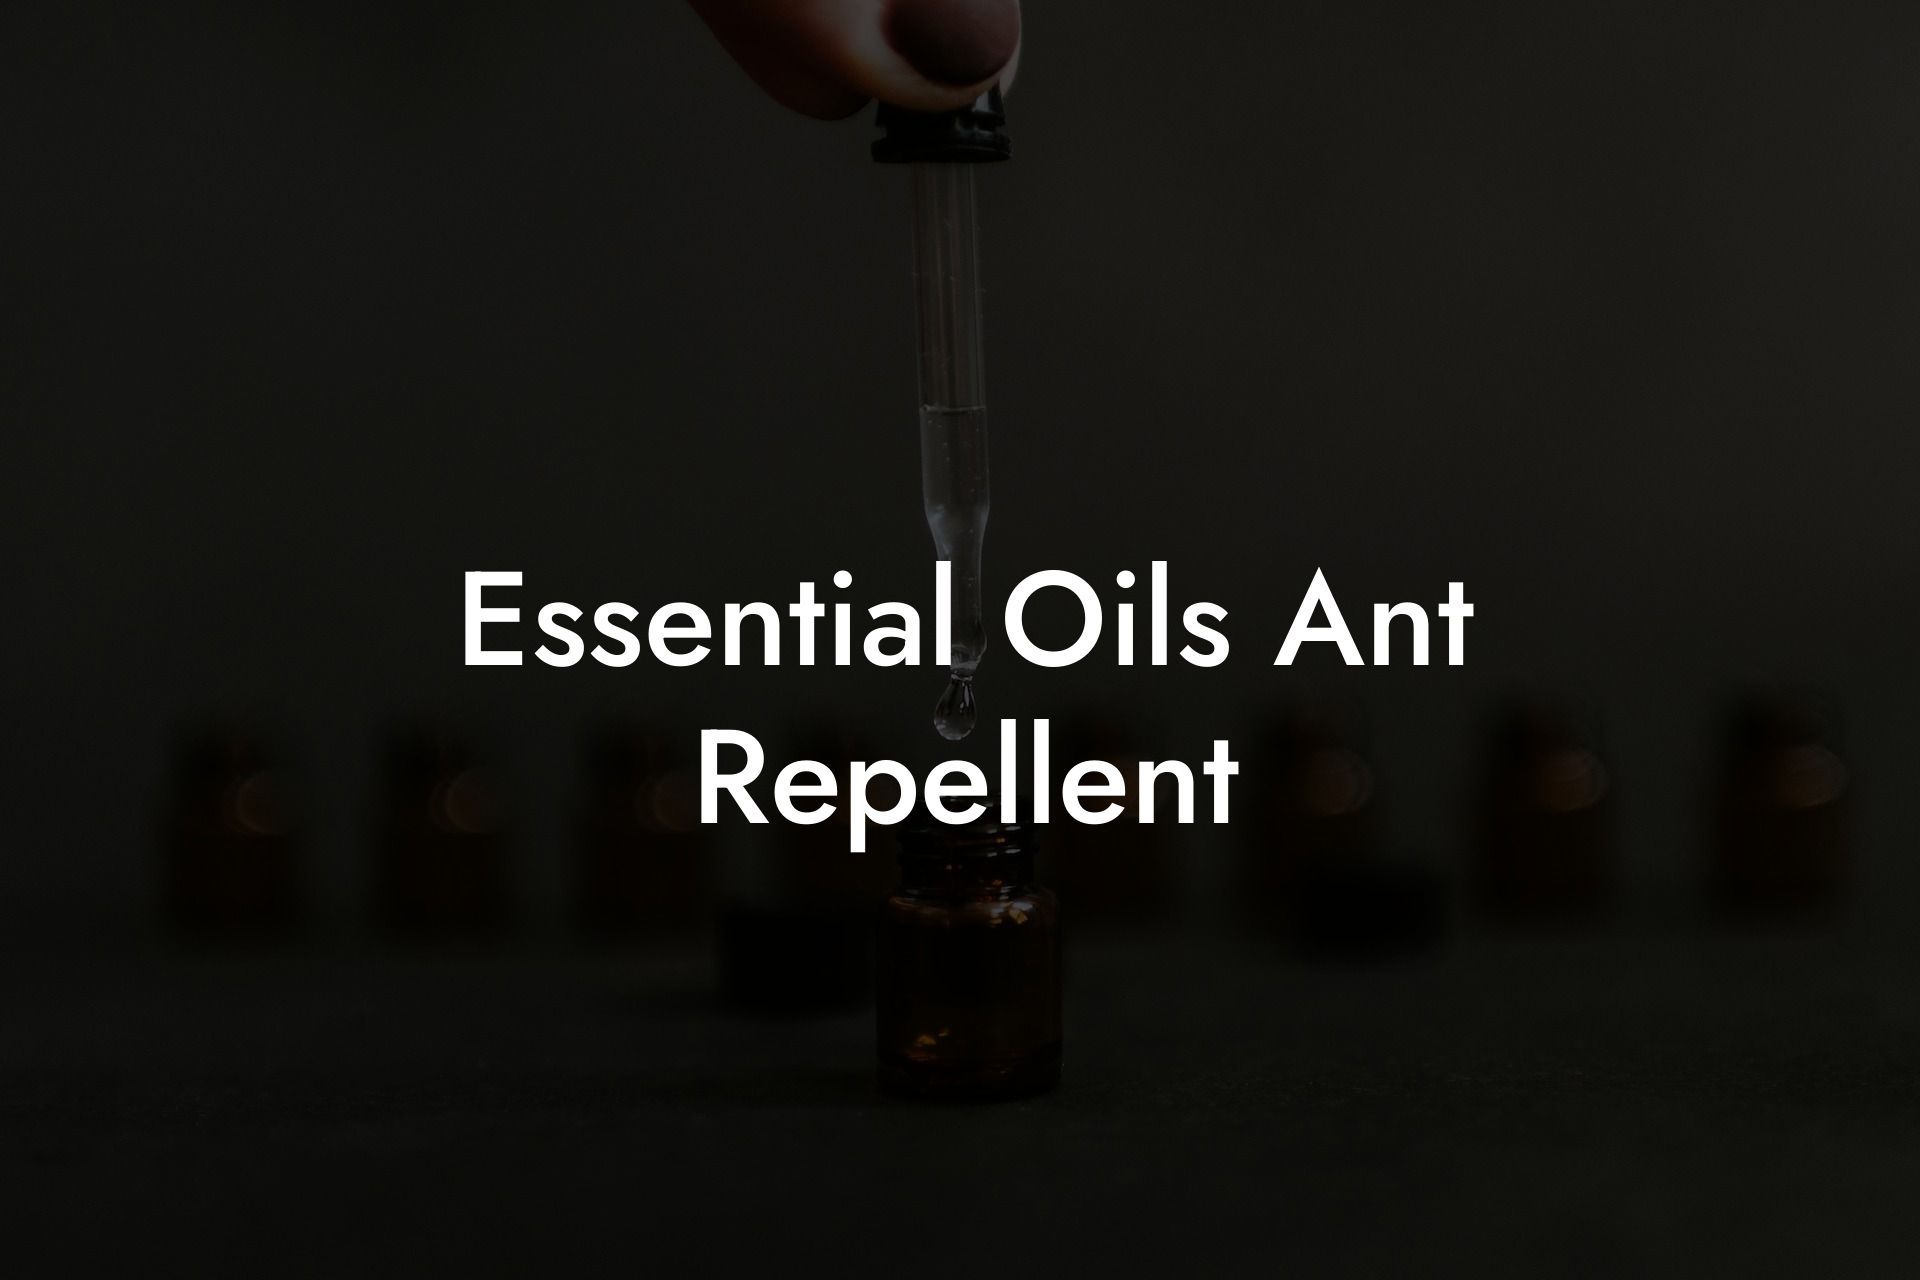 Essential Oils Ant Repellent